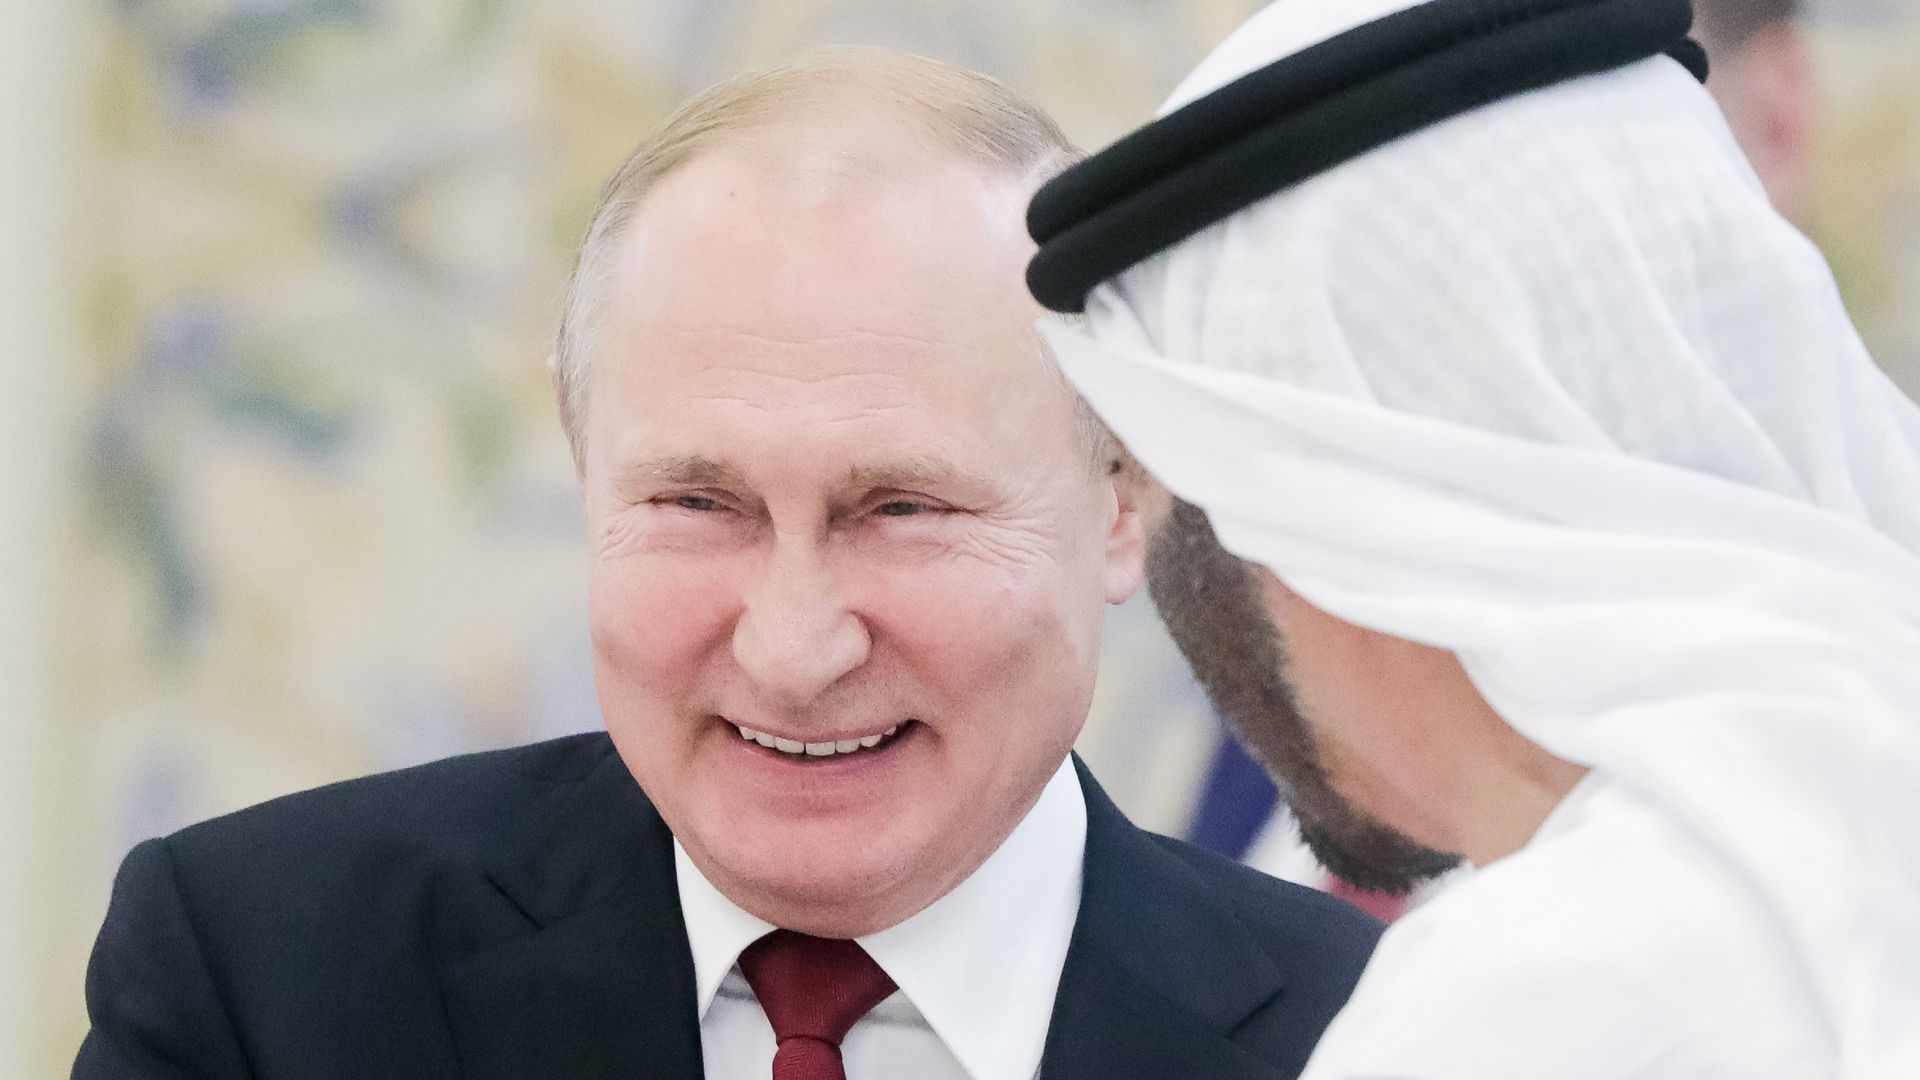 Vladimir Putin laughing